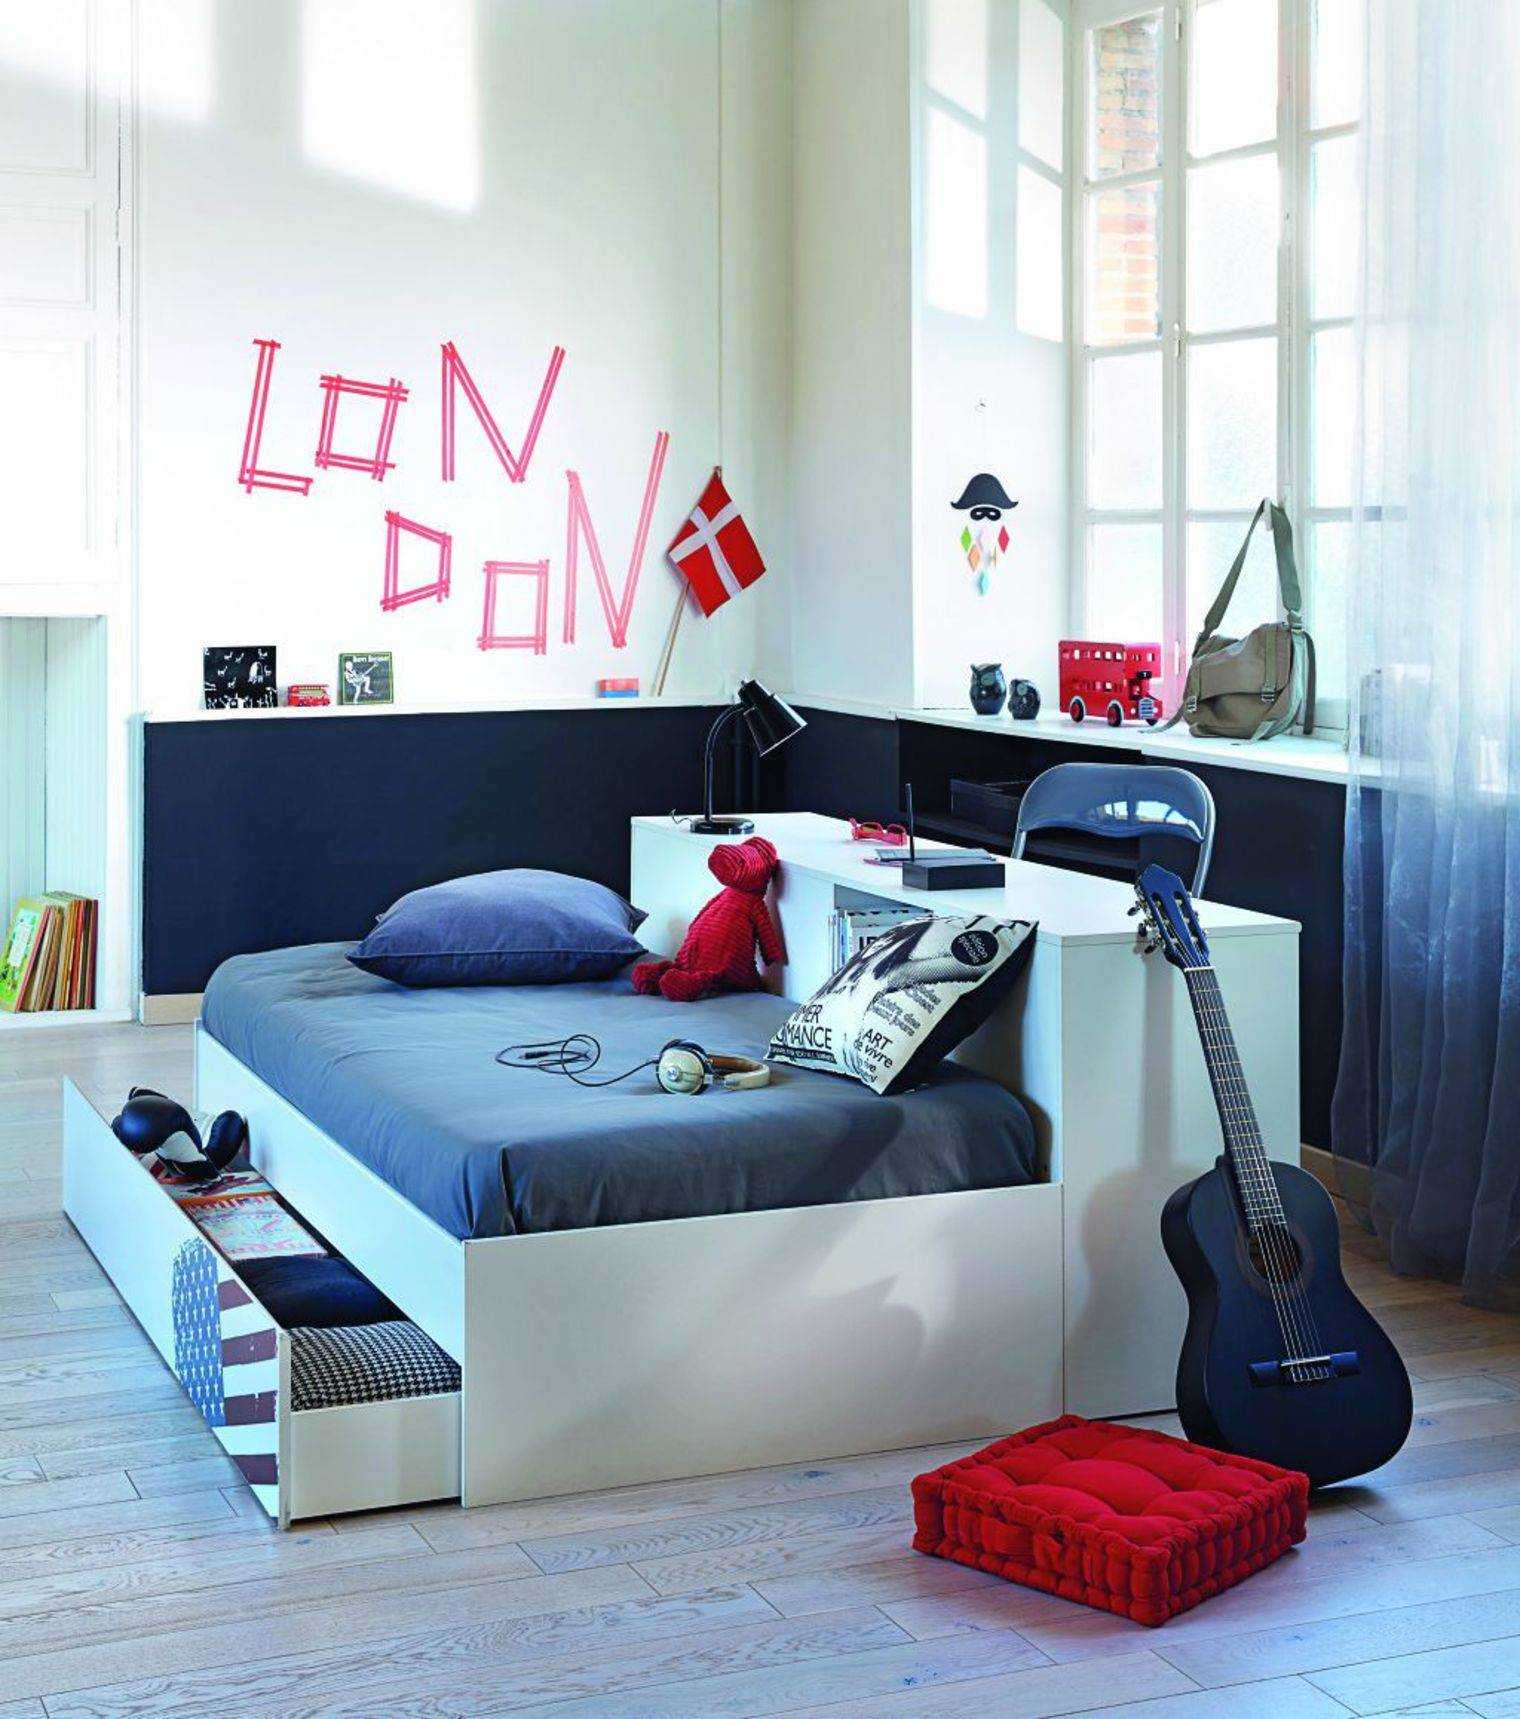 кровать или диван в комнату подростка